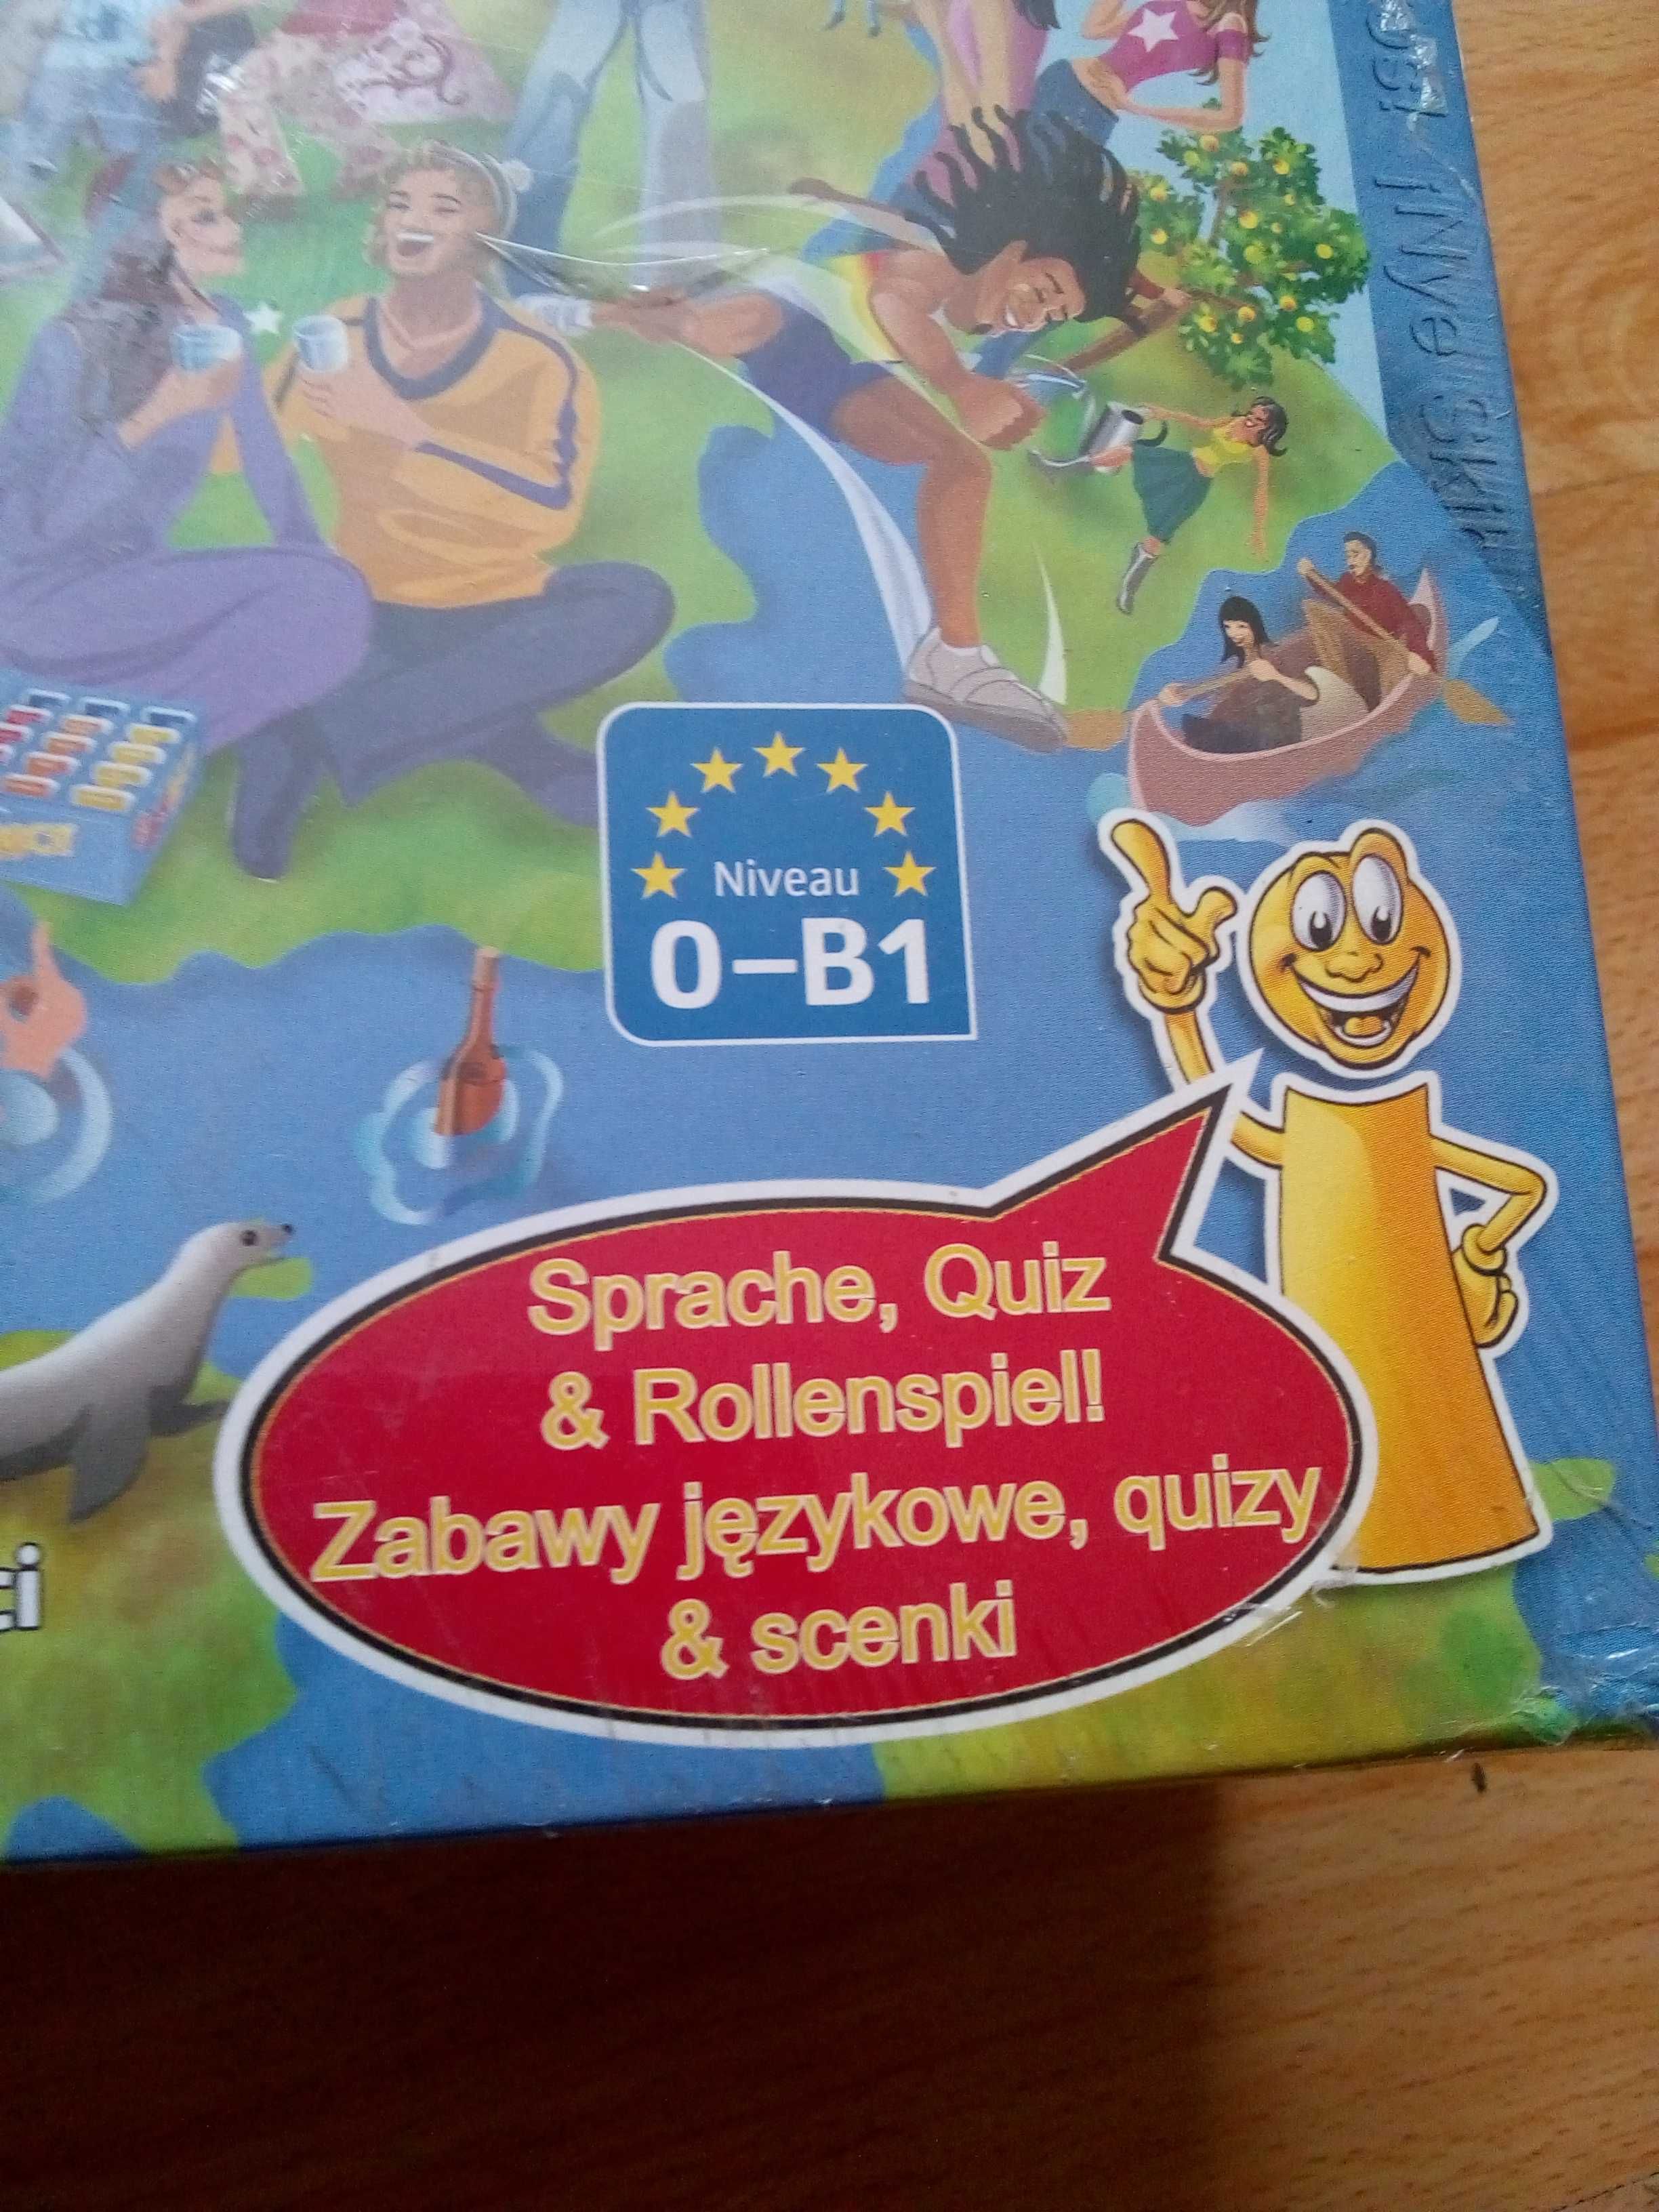 gra językowa  polsko niemiecka  New Amci